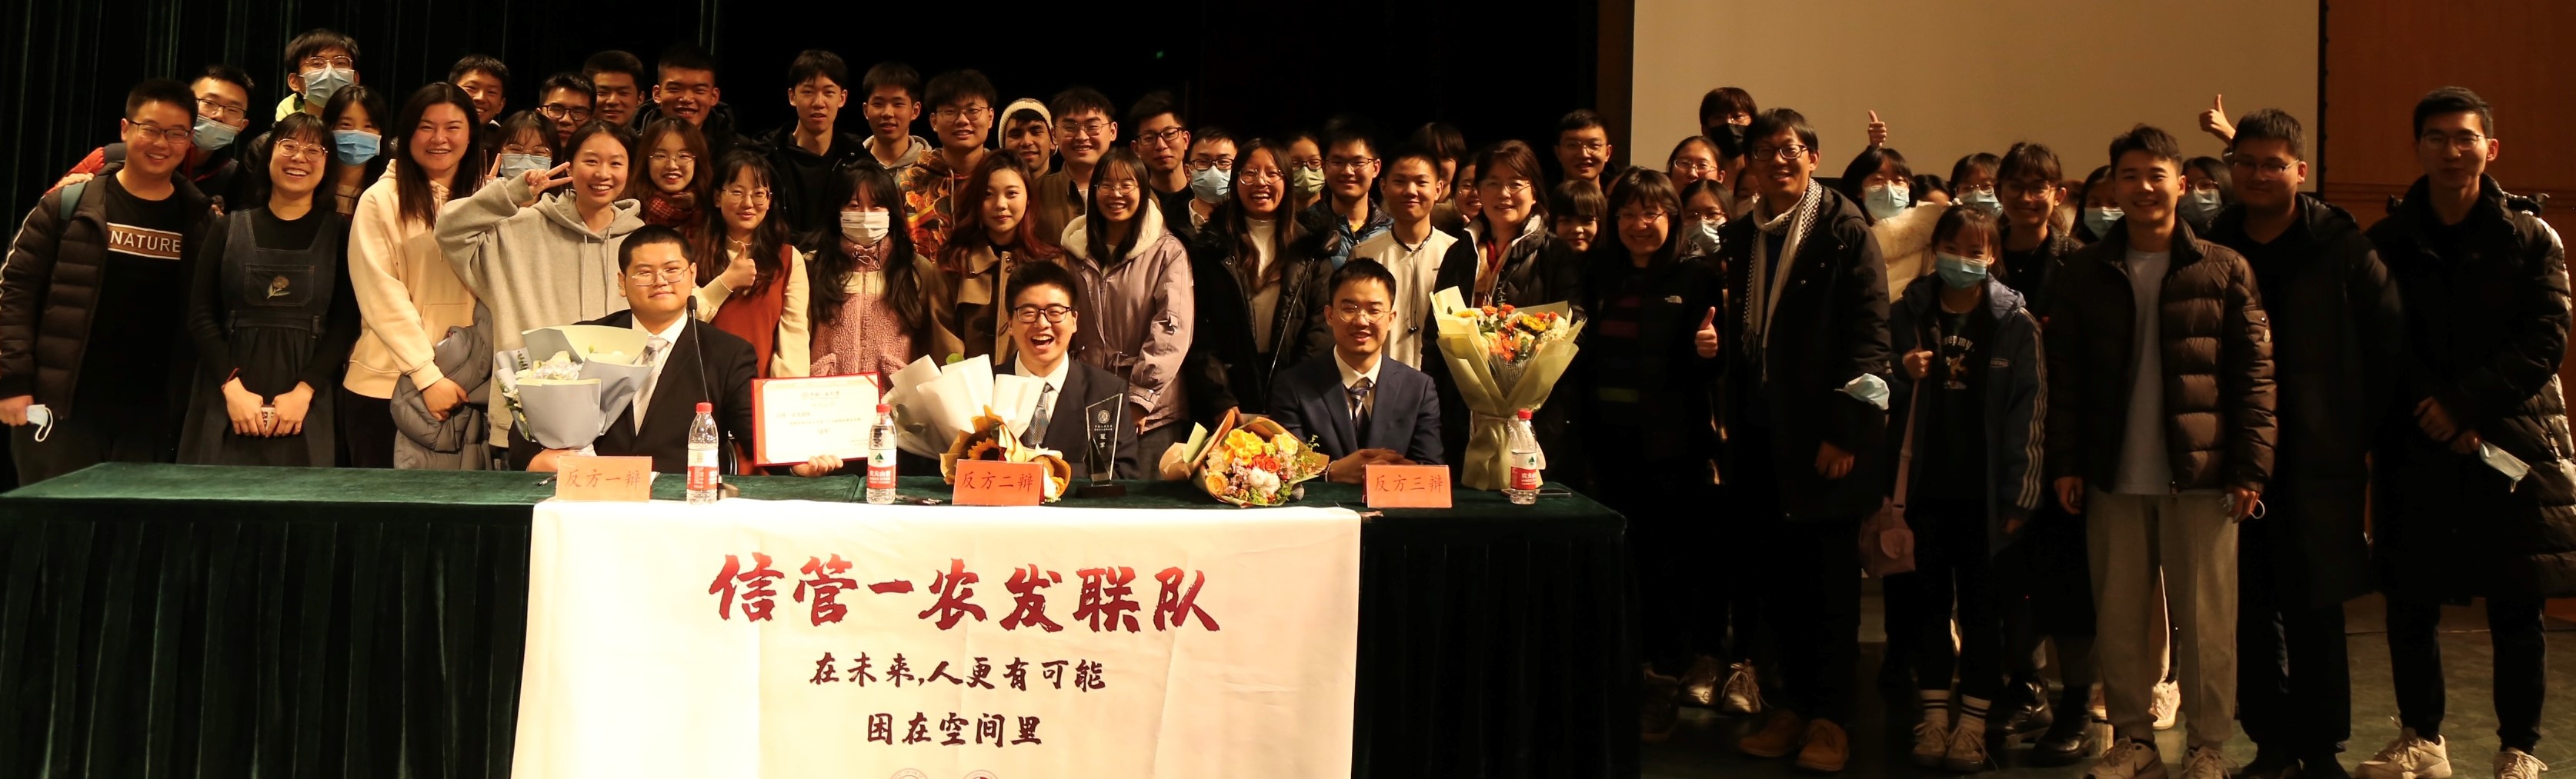 喜报|我院辩论队荣取中国人民大学第二十九届辩论赛冠军！